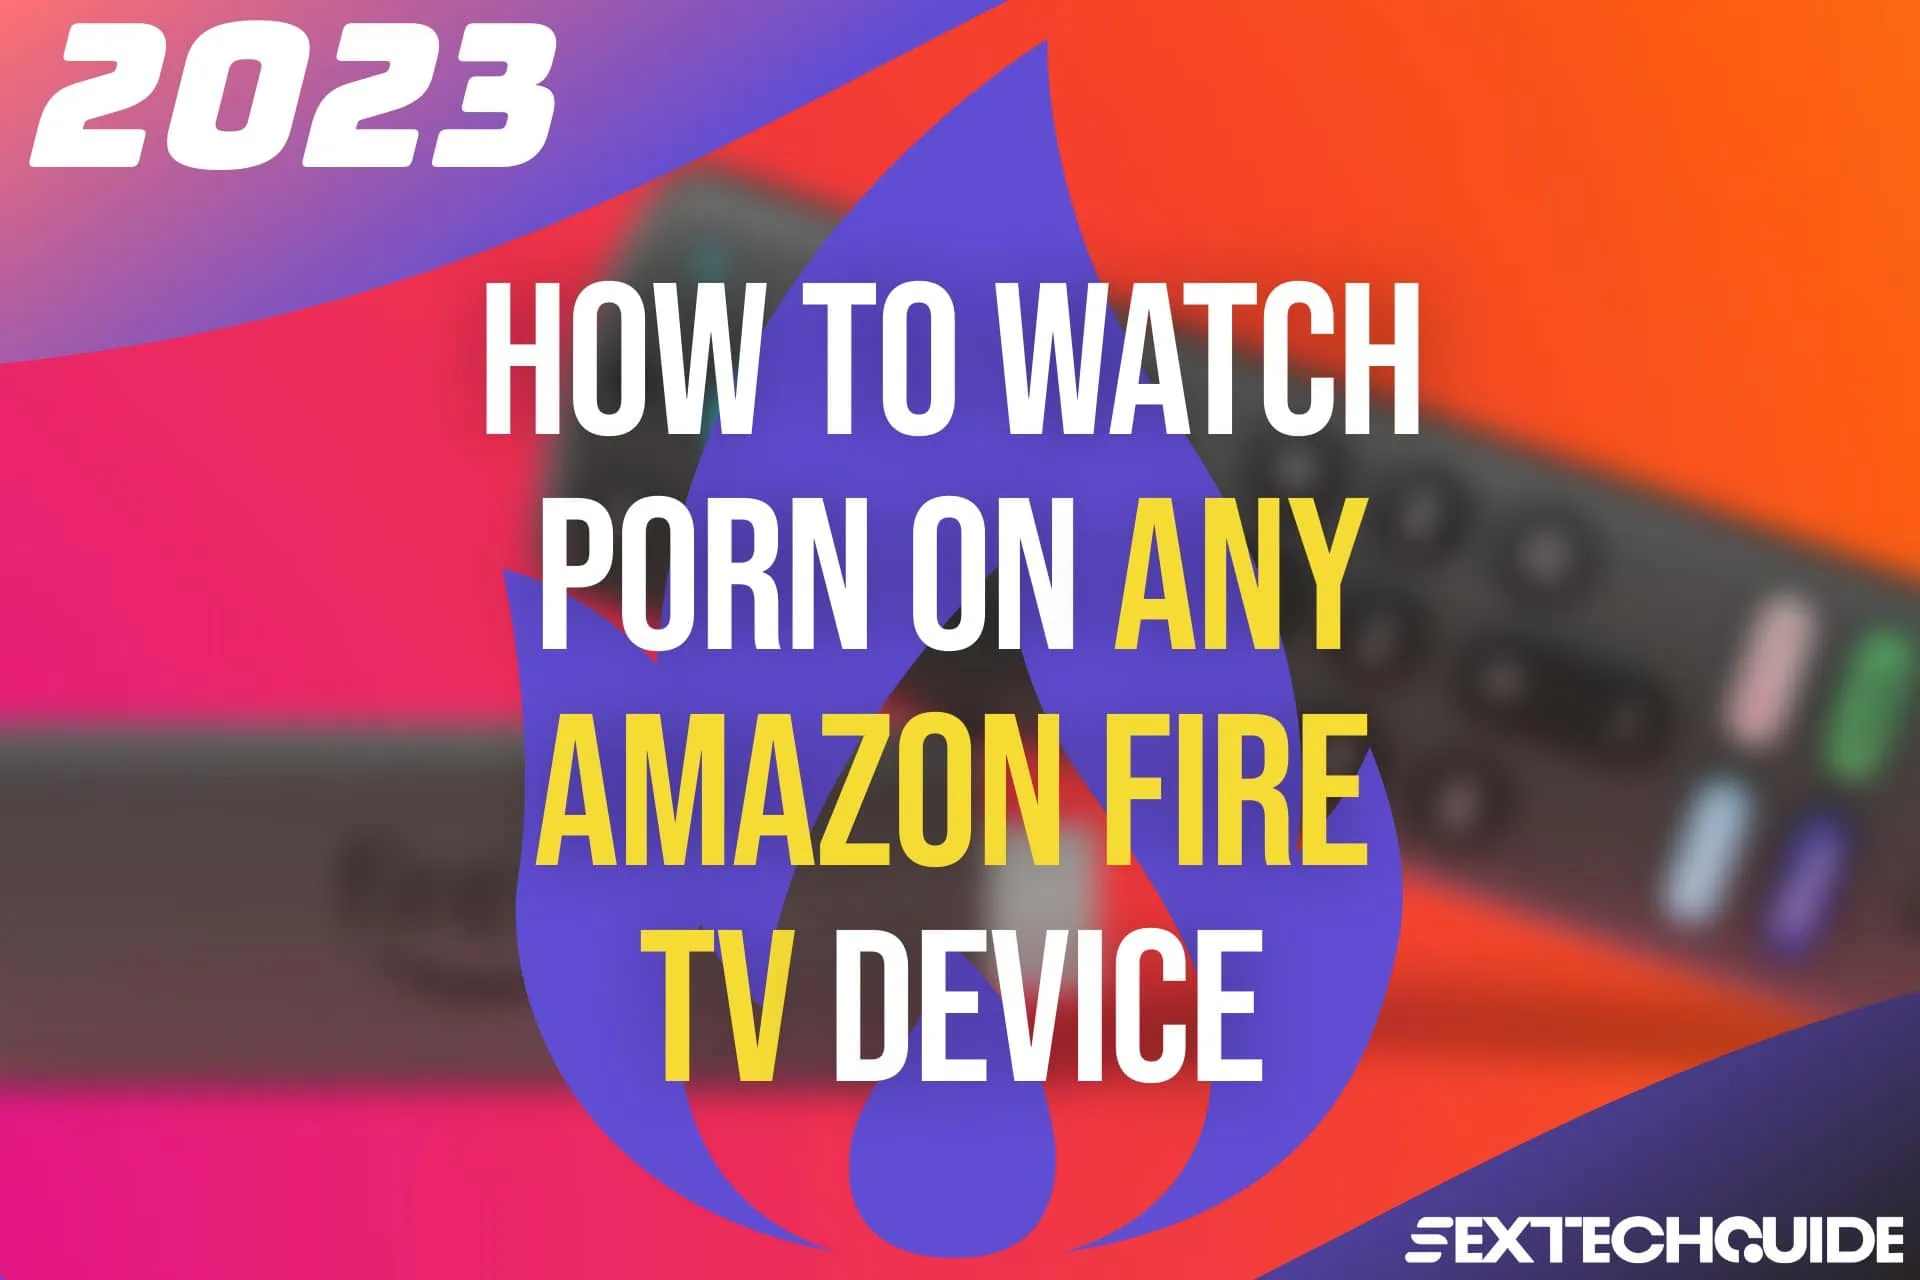 Amazon Xxx Videos - Fire Porn (2023): Find & Watch XXX Videos on Amazon Devices